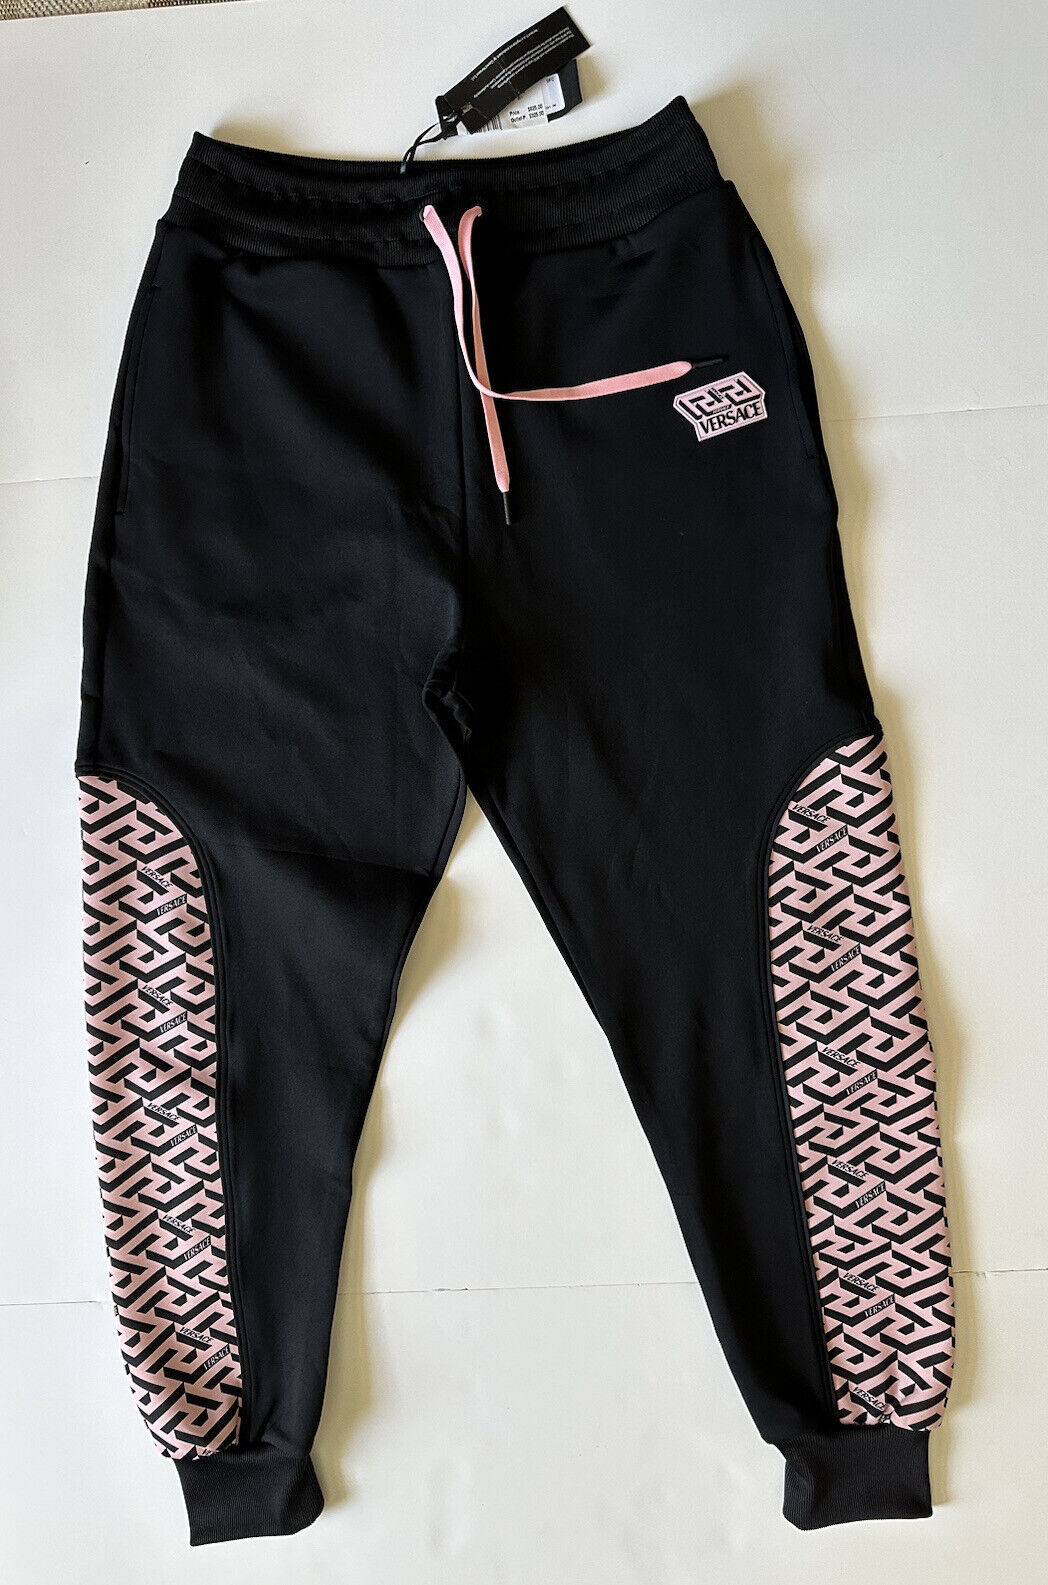 NWT $625 Versace Женские черные брюки-джоггеры с принтом Greca, размер 5, Италия 1002081 